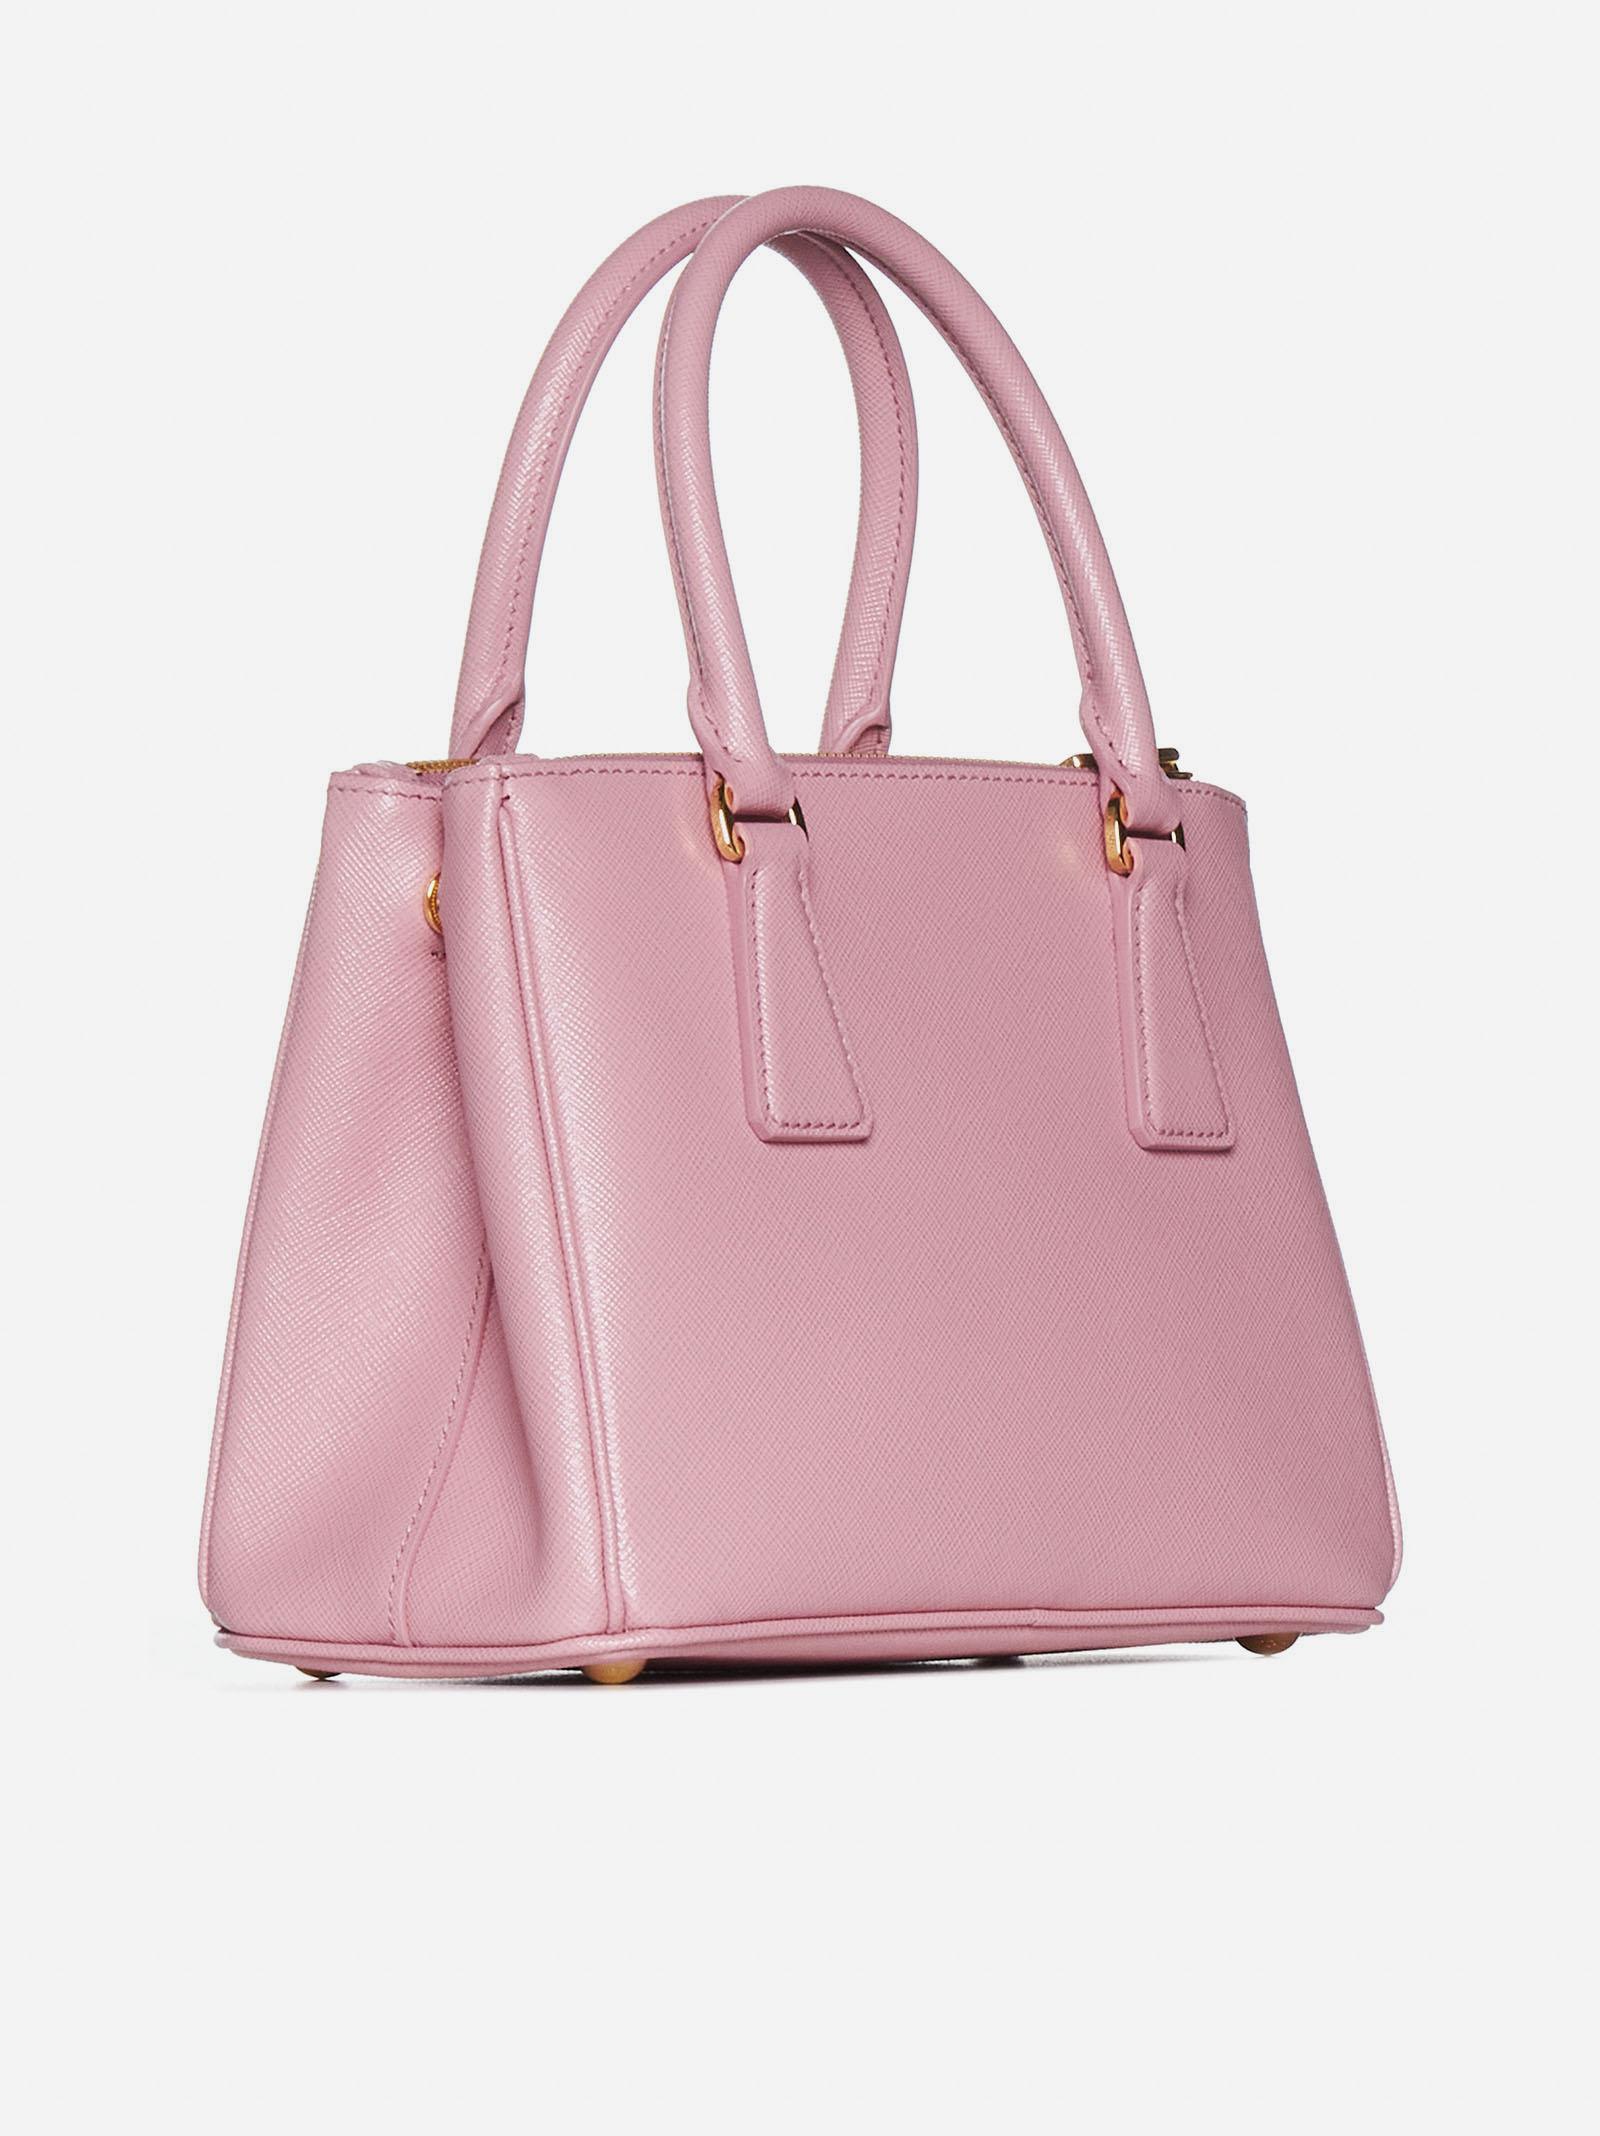 Prada Galleria Small Saffiano Leather Bag in Pink